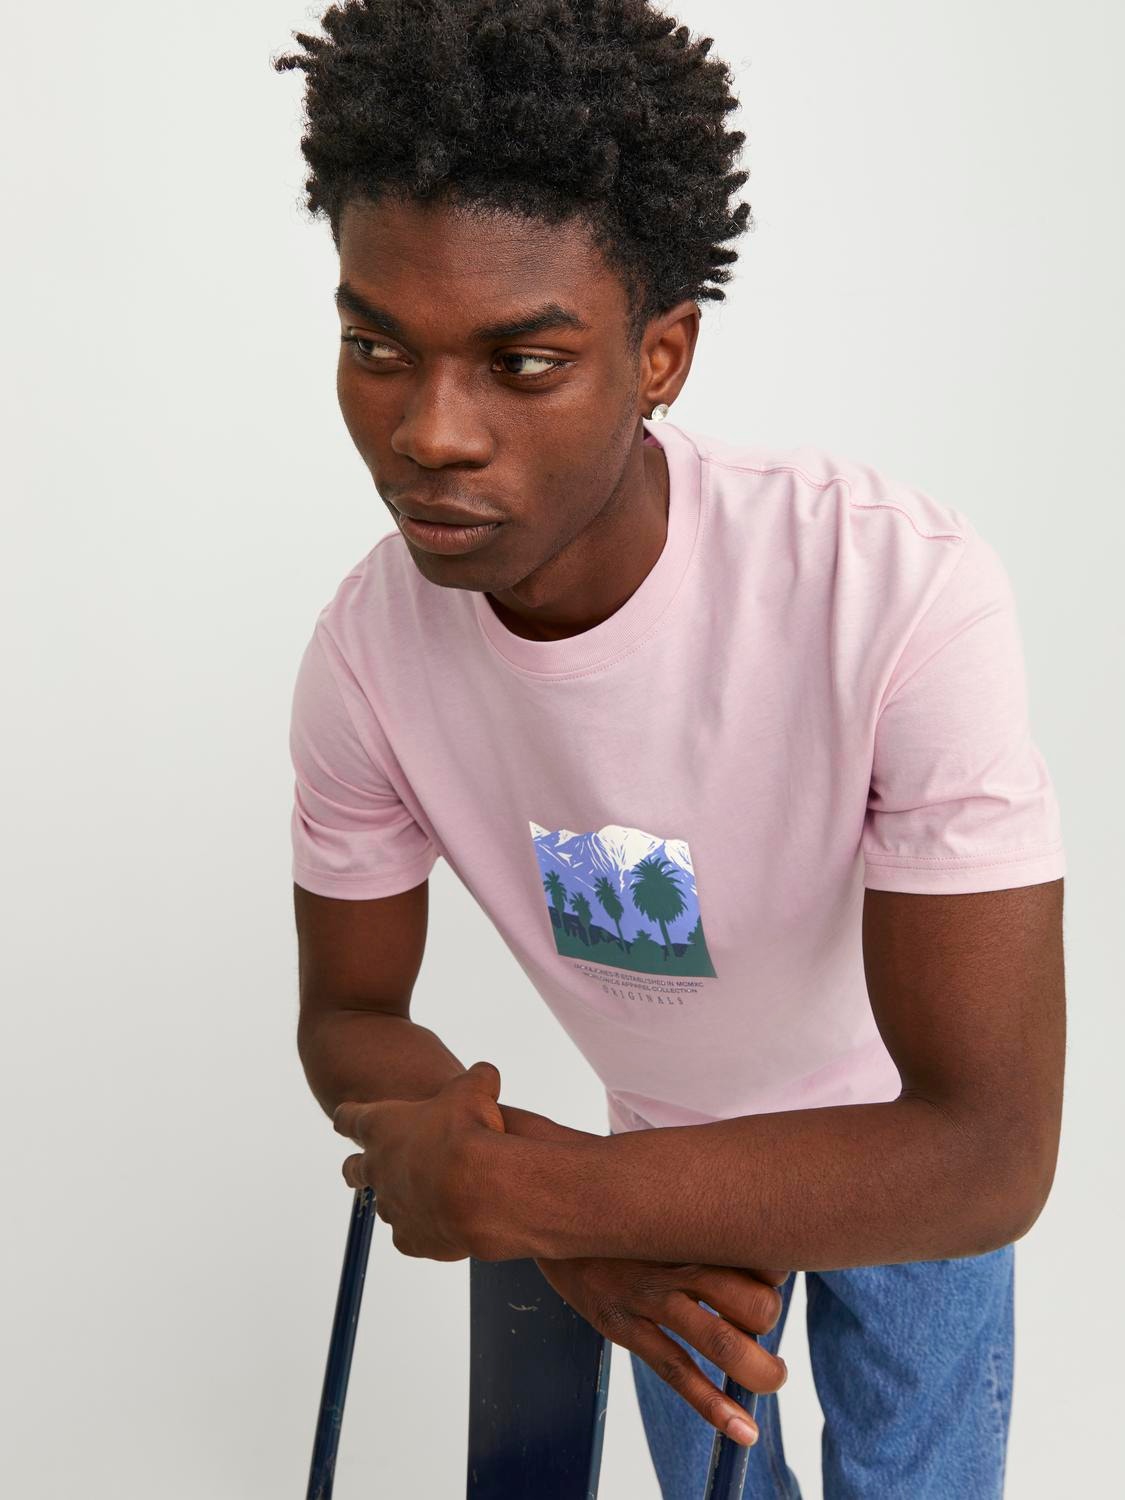 Mocha Washed V-Neck Top  Pink crewneck sweatshirt, V neck tops